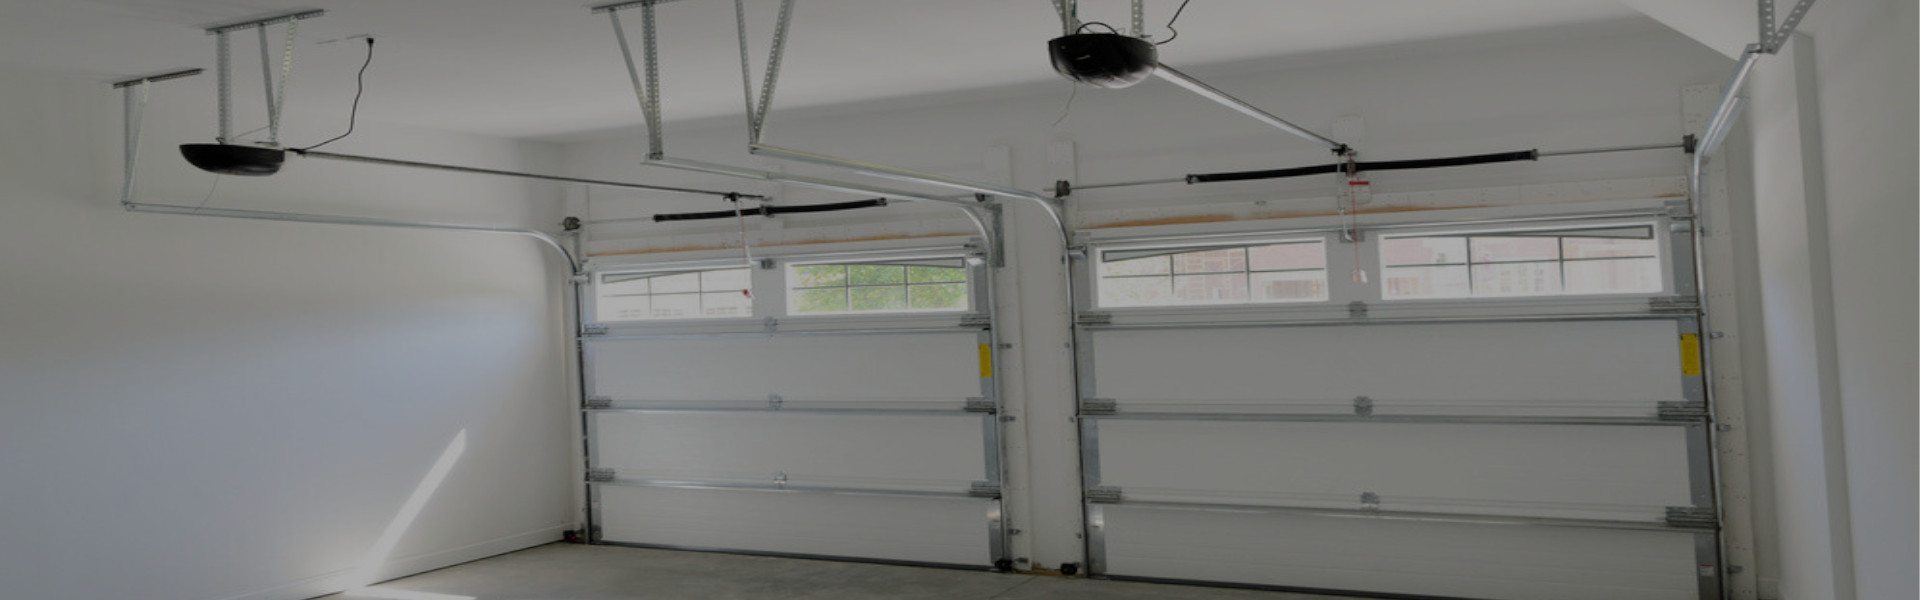 Slider Garage Door Repair, Glaziers in Deptford, SE8